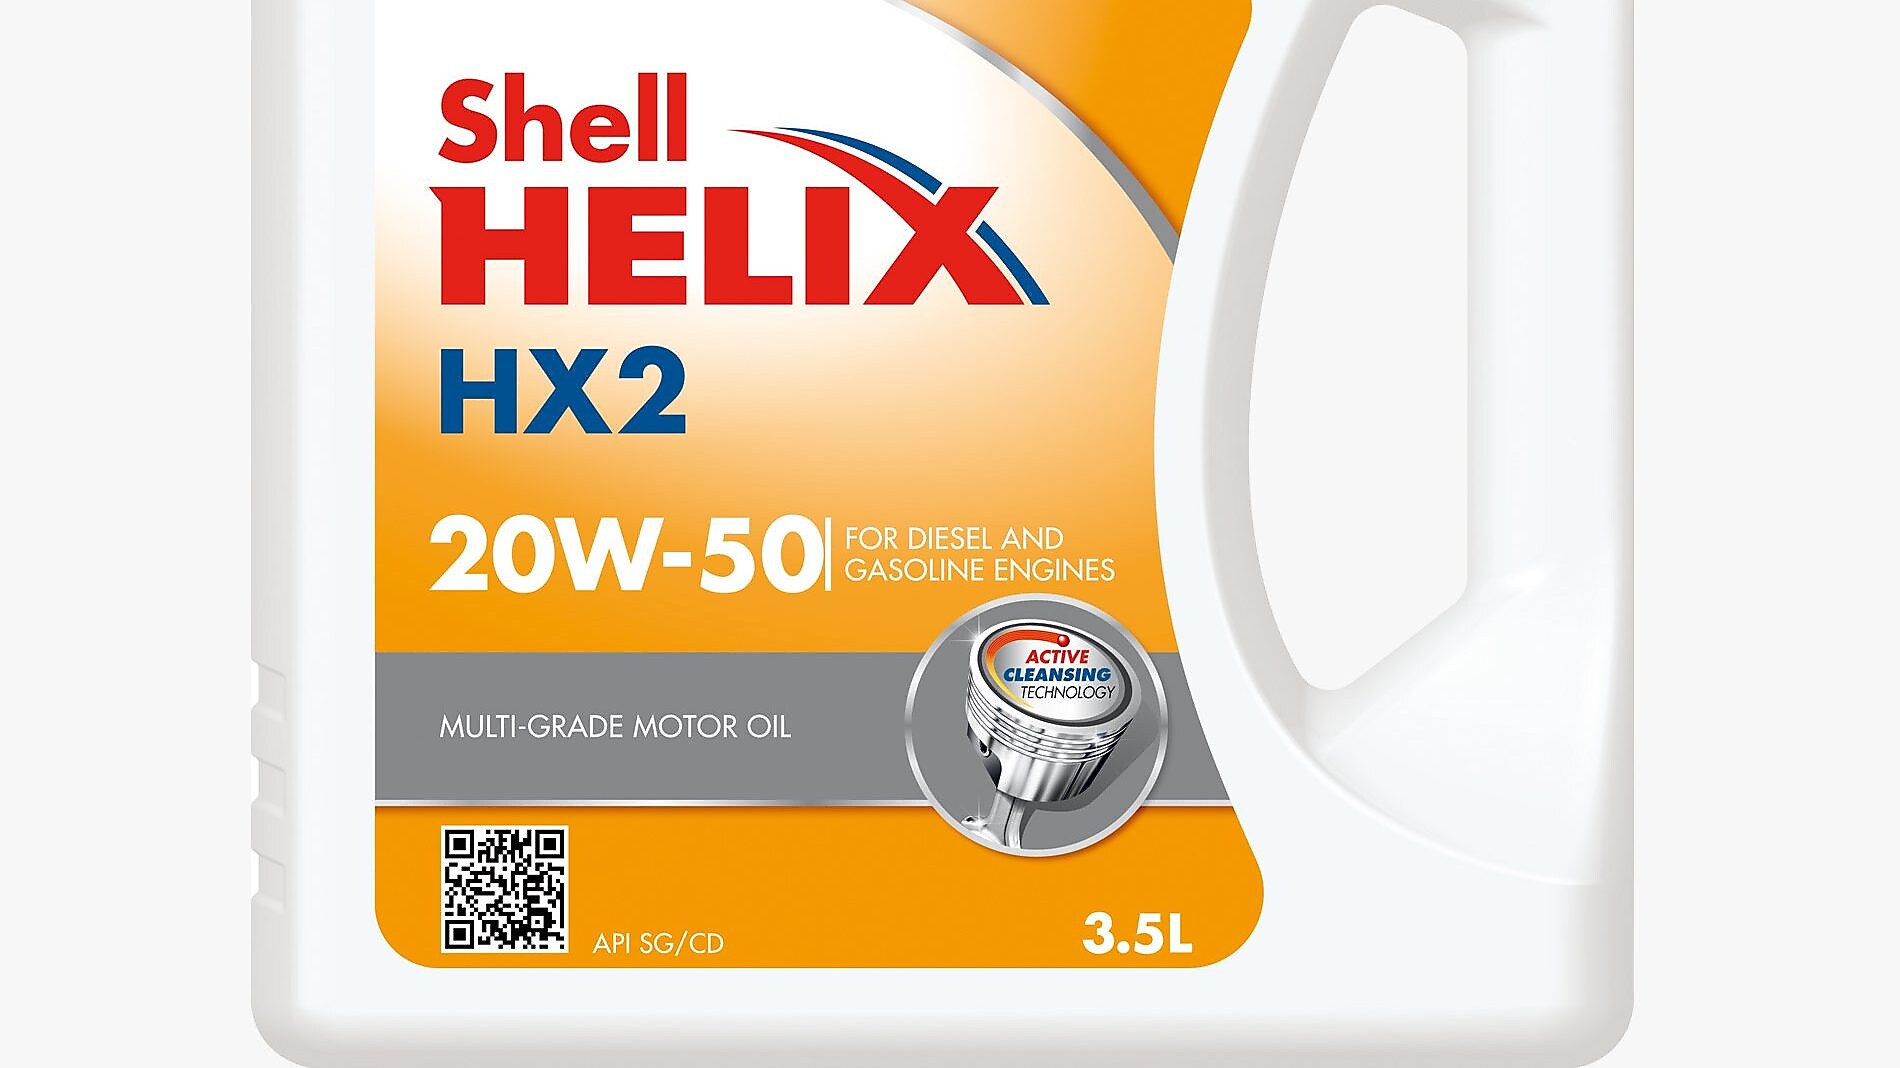 Shell Helix HX2 20W-50